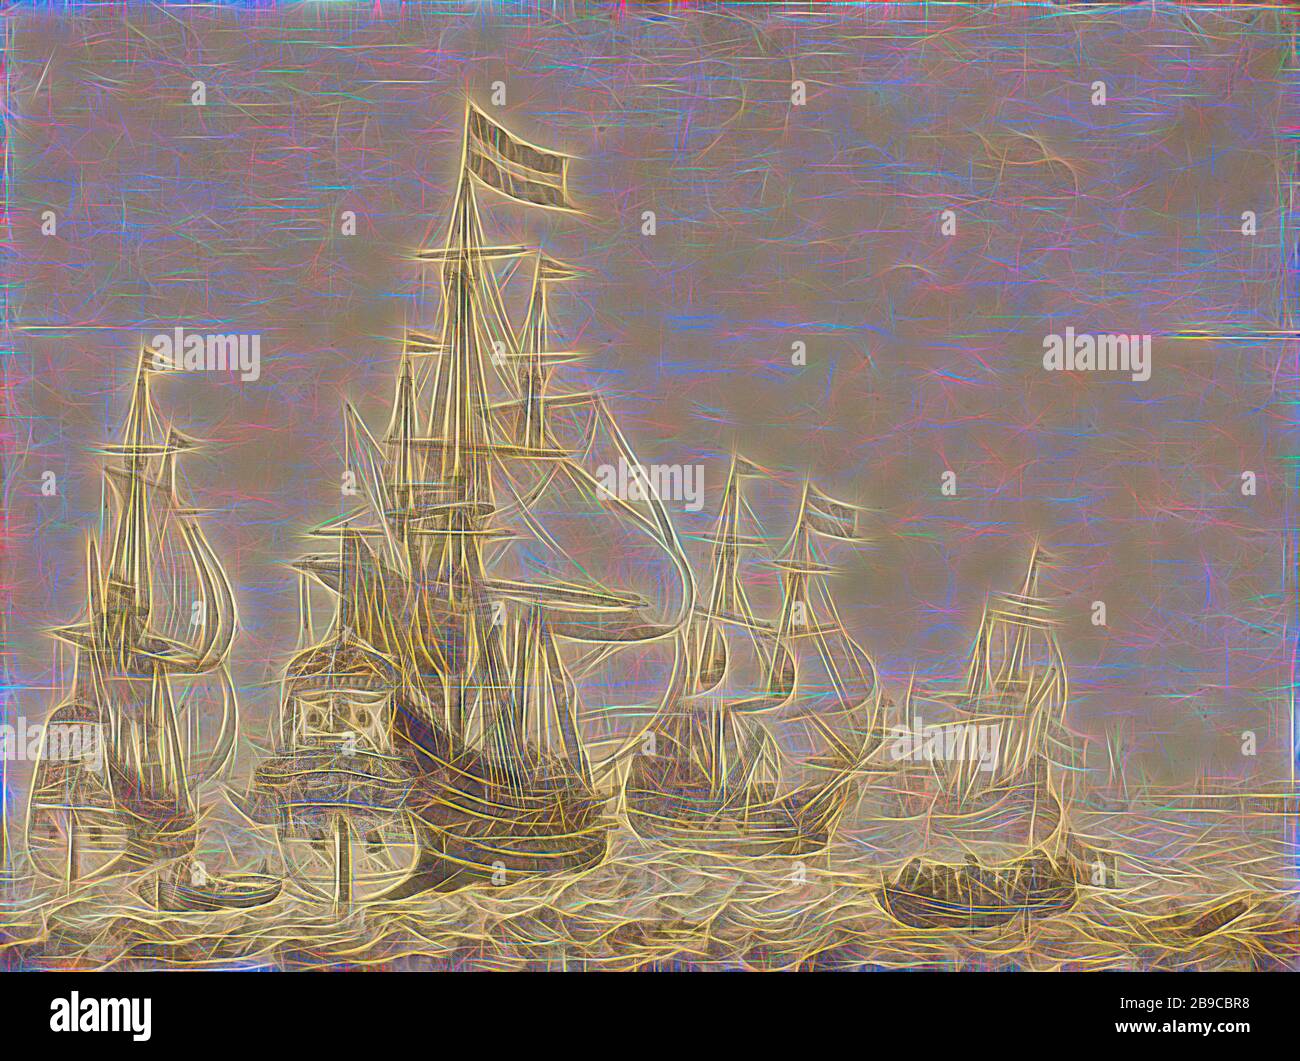 Seascape avec les Hollandais Men-of-War y compris le ' Drenthe 'et le' Prince Frederick-Henry '', Seascape avec quelques navires de guerre hollandais, y compris le Drenthe et le Prince Frederick Hendrick, une boucle sur la droite avec les marins, Drenthe (navire), Prins Frederik Hendrik (navire), Willem van de Velde (I), 1630, 1670 panneau h 70 cm × l 90 cm d 6 cm, repensé par Gibon, design de brillant chaleureux et gai de luminosité et de rayonnement de rayons lumineux. L'art classique réinventé avec une touche moderne. La photographie inspirée du futurisme, qui embrasse l'énergie dynamique de la technologie moderne, du mouvement, de la vitesse et révolutionne le culte Banque D'Images